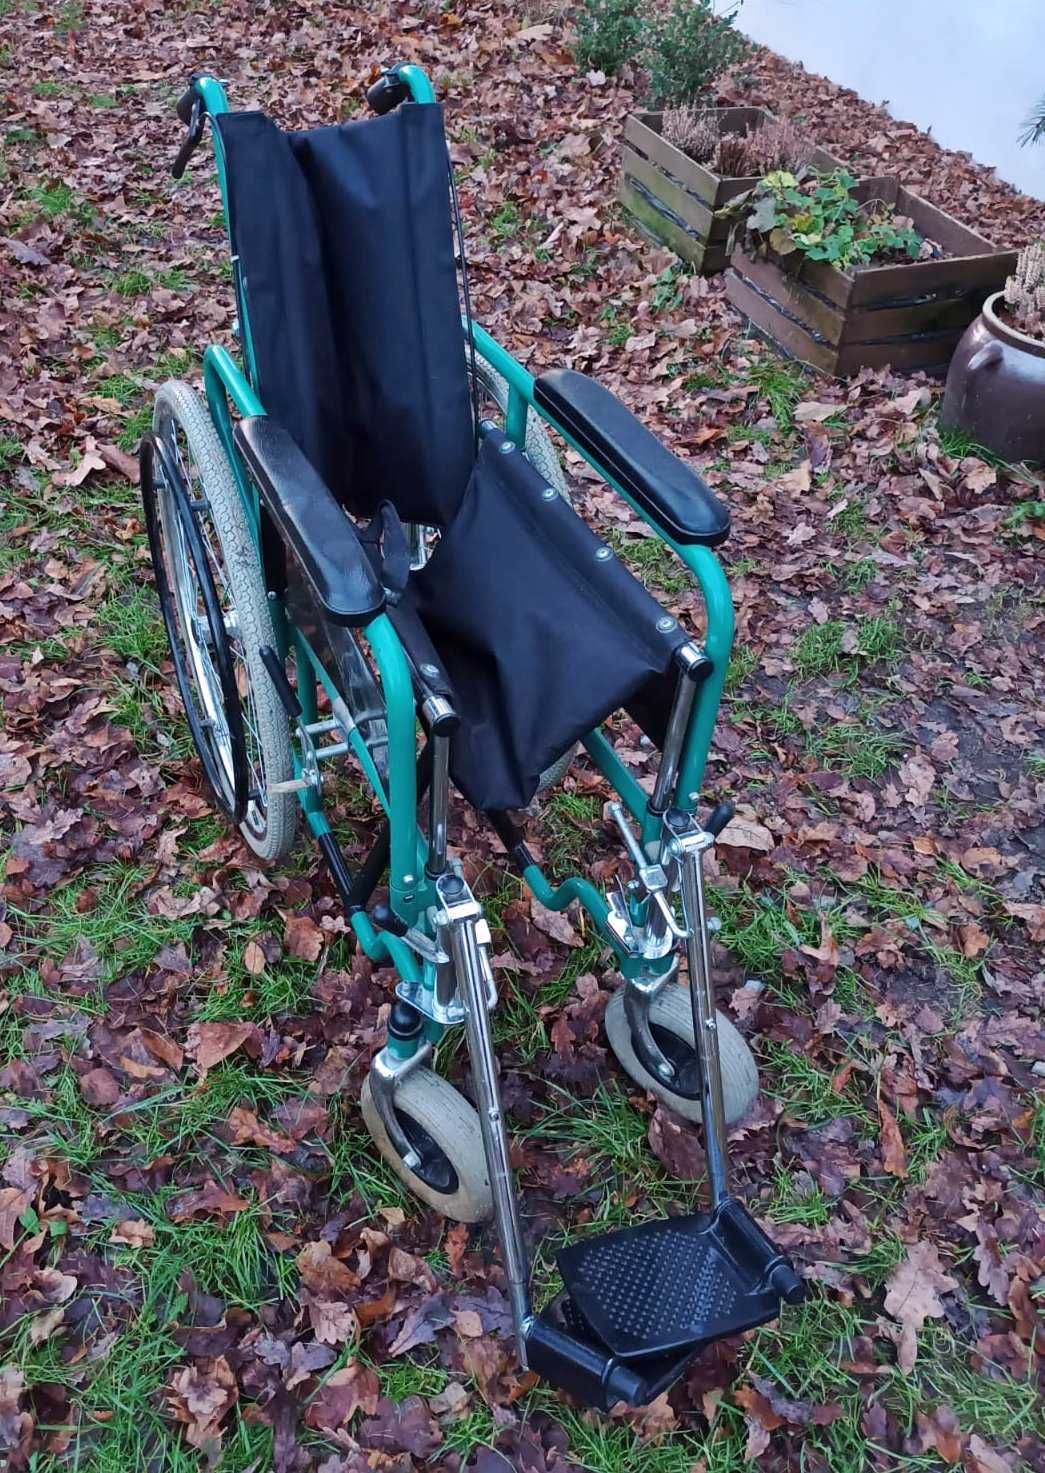 Wózek inwalidzki aluminiowy, składany, bardzo lekki. Mało używany